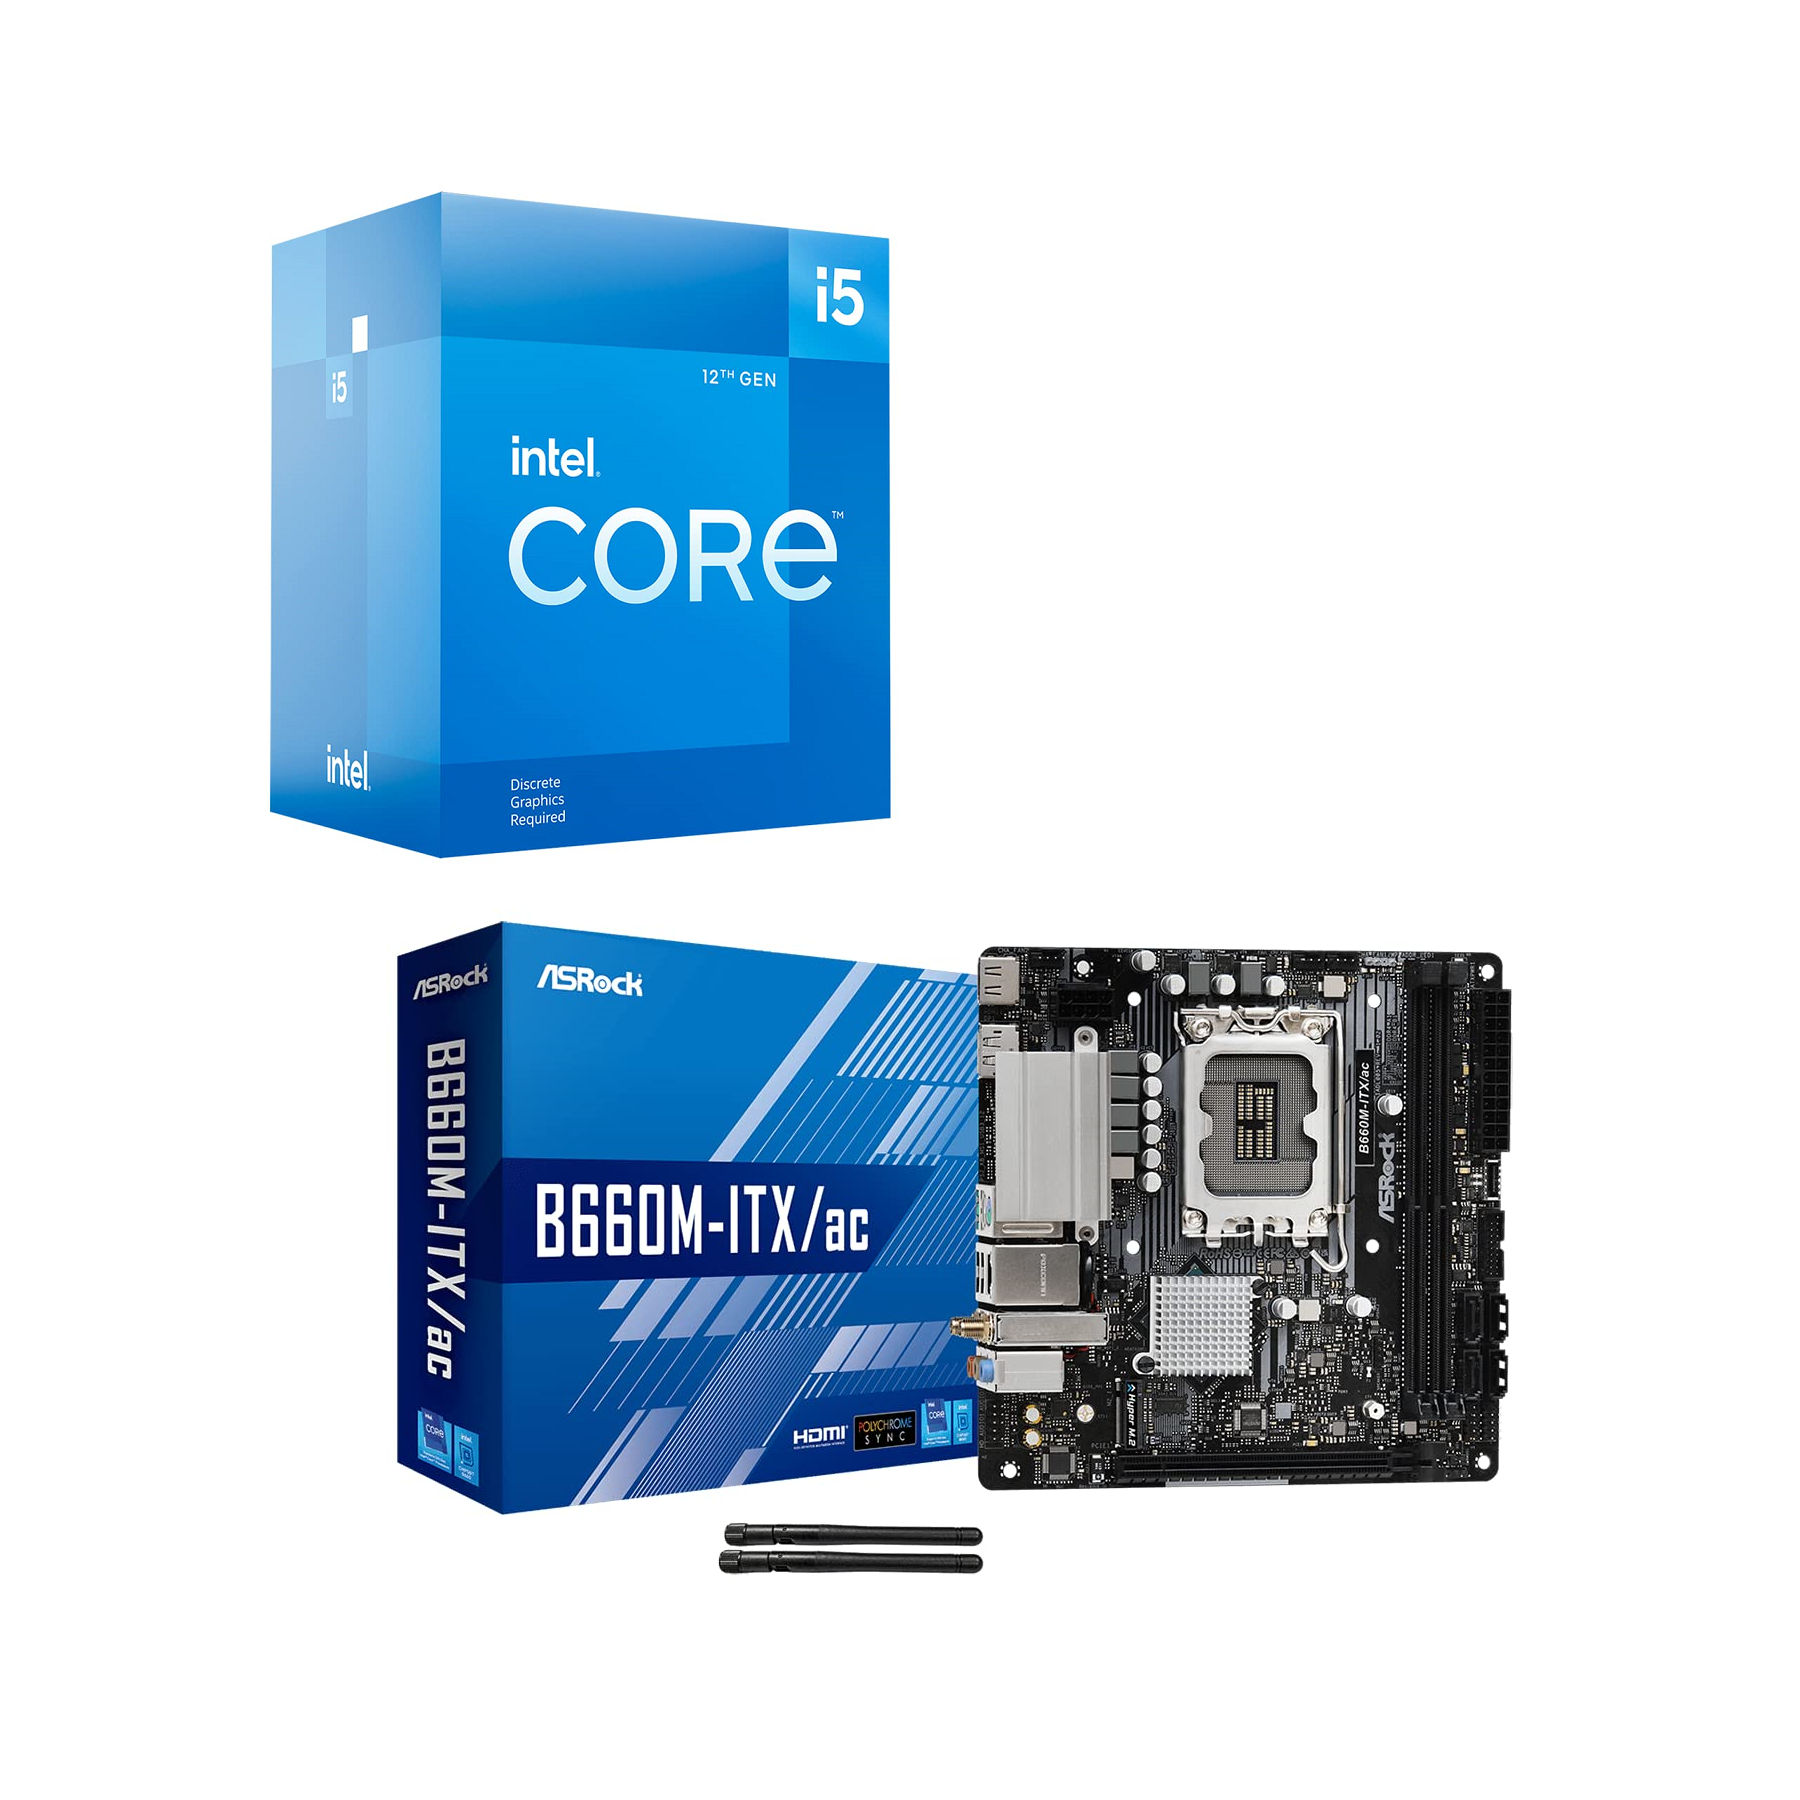 Intel Core i5-12400 Processor &  ASrock B660M-ITX/ac Motherboard Combo